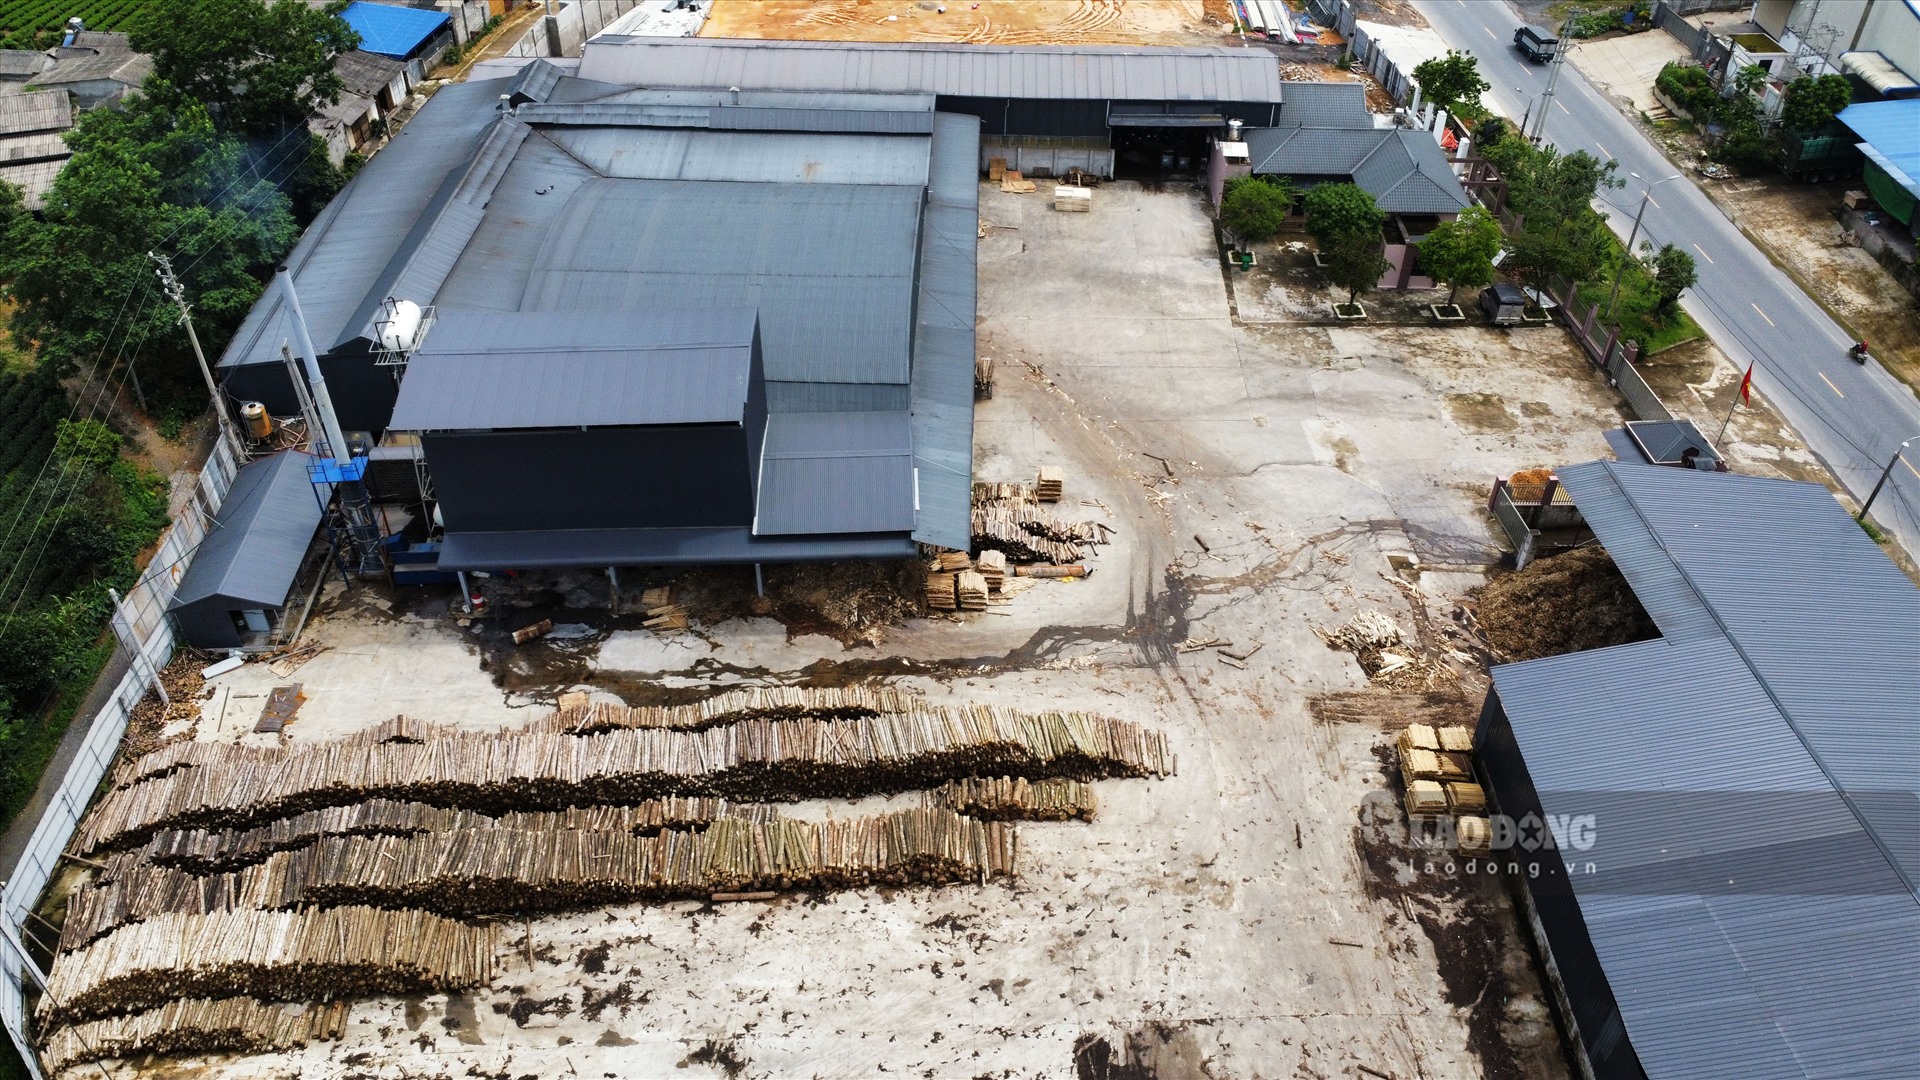 Còn theo ghi nhận thực tế của PV vào ngày 28.6, trong khuân viên nhà xưởng chế biến gỗ của Công ty Hưng Thịnh, gỗ nguyên liệu được tập kết ngoài sân, một số vị trí xuất hiện dòng nước đen chảy trên bề mặt kèm vỏ gỗ đang trong quá trình phân huỷ.